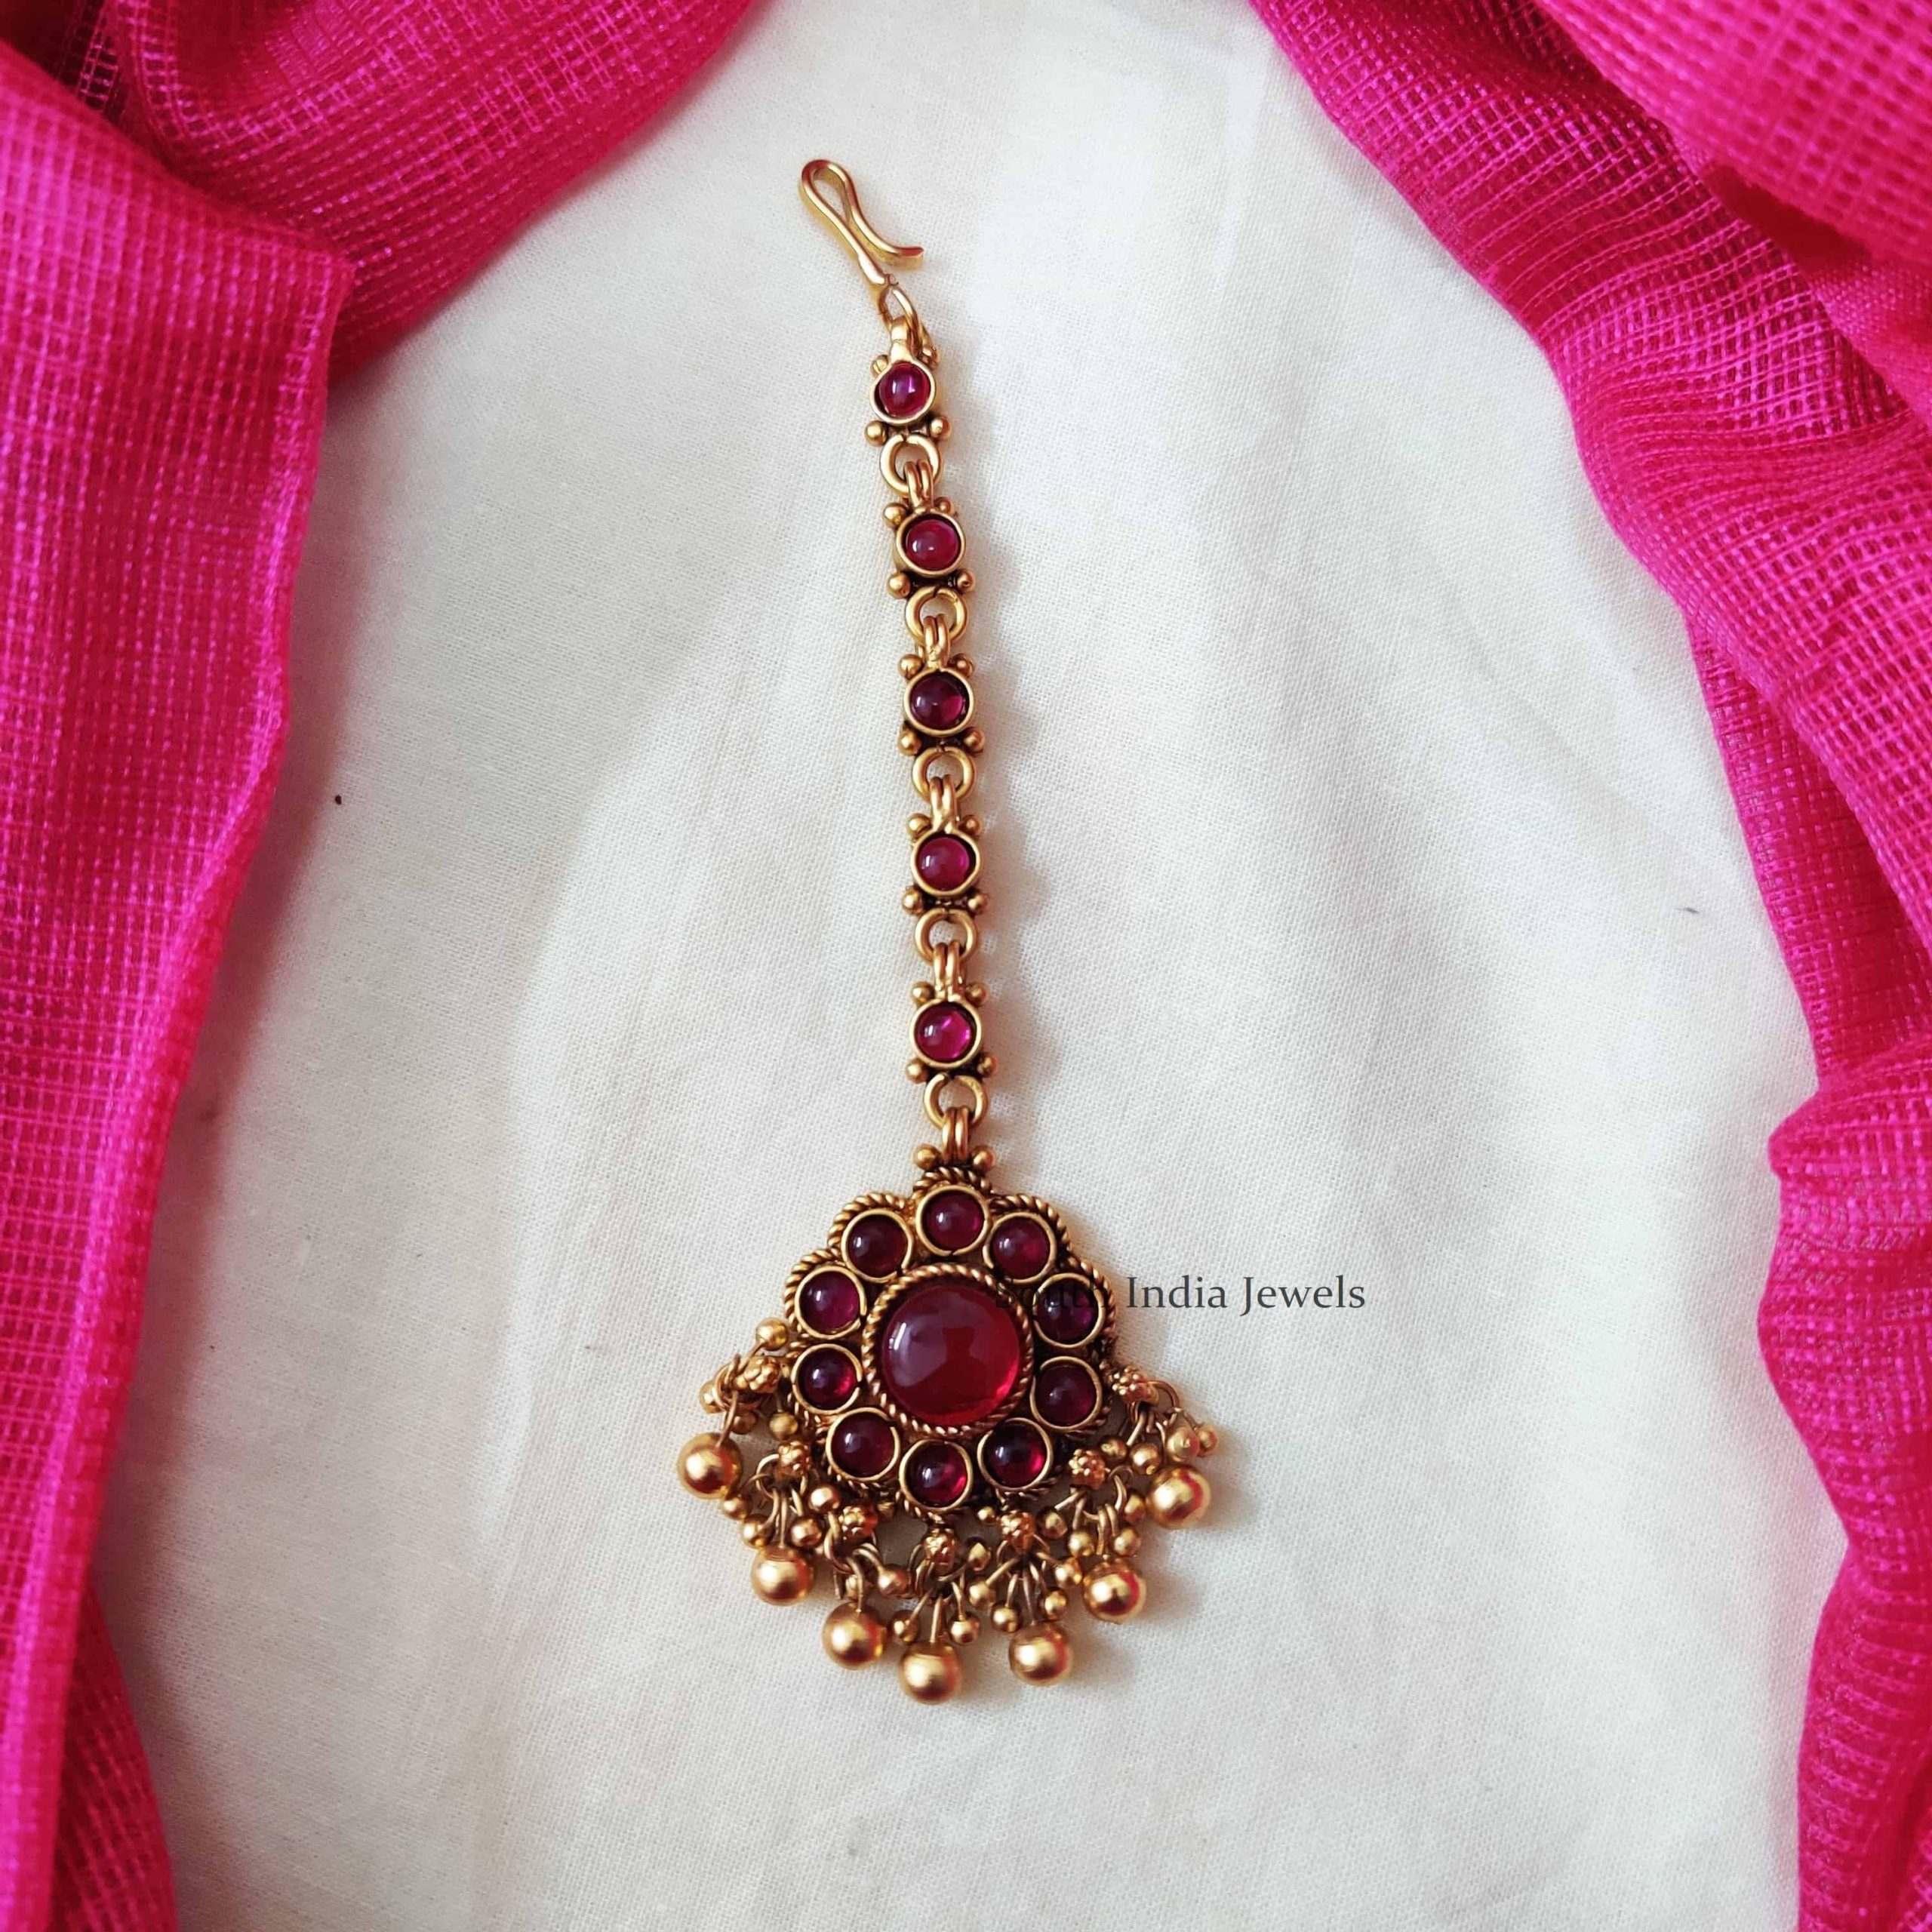 Floral Design Maang Tikka - South India Jewels